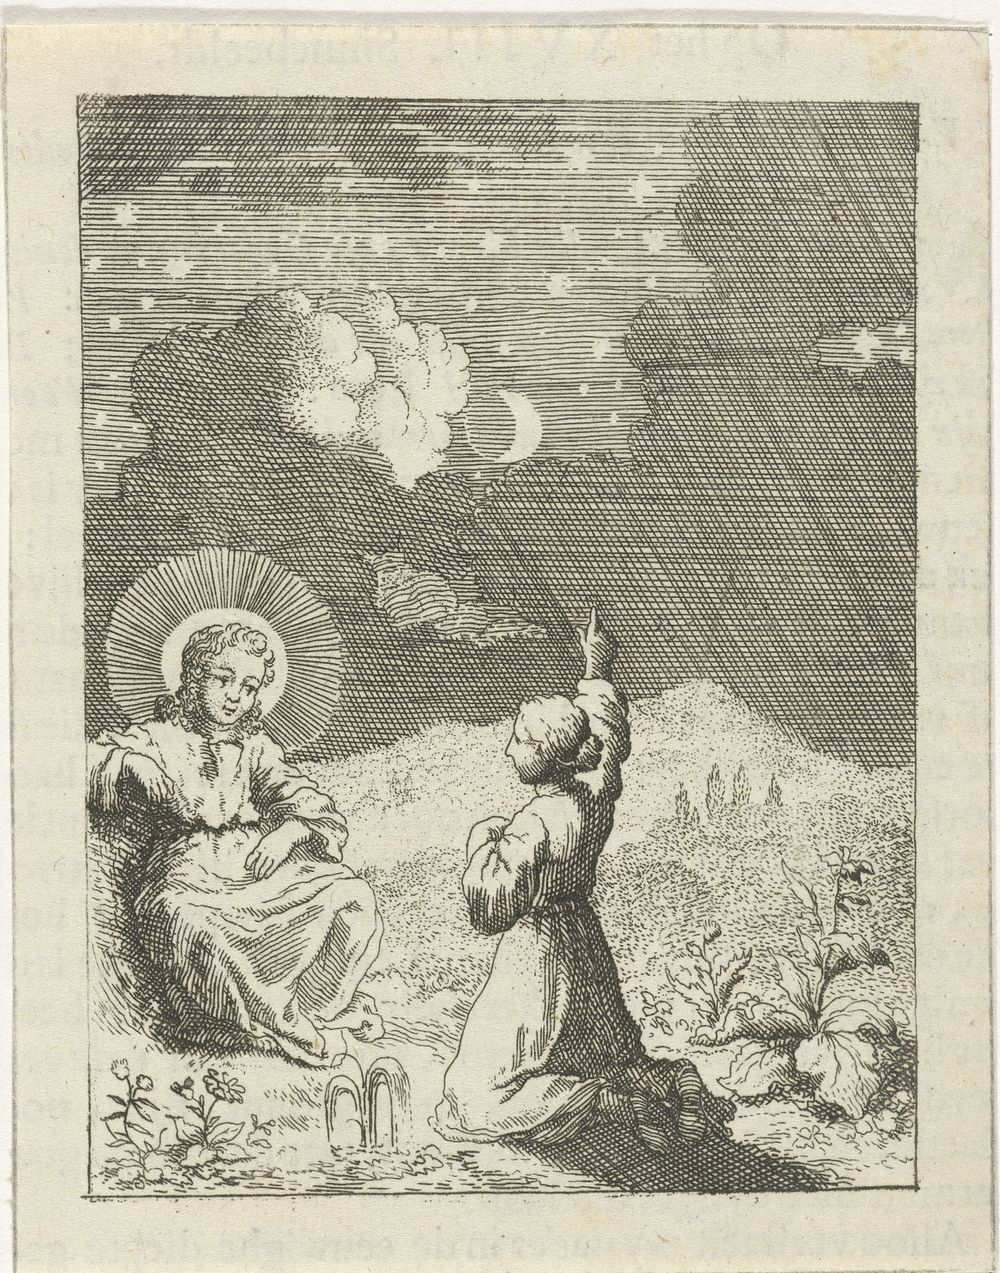 Christus en de gepersonifieerde ziel aanschouwen de sterrenhemel (1678 - 1687) by Jan Luyken and Pieter Arentsz II